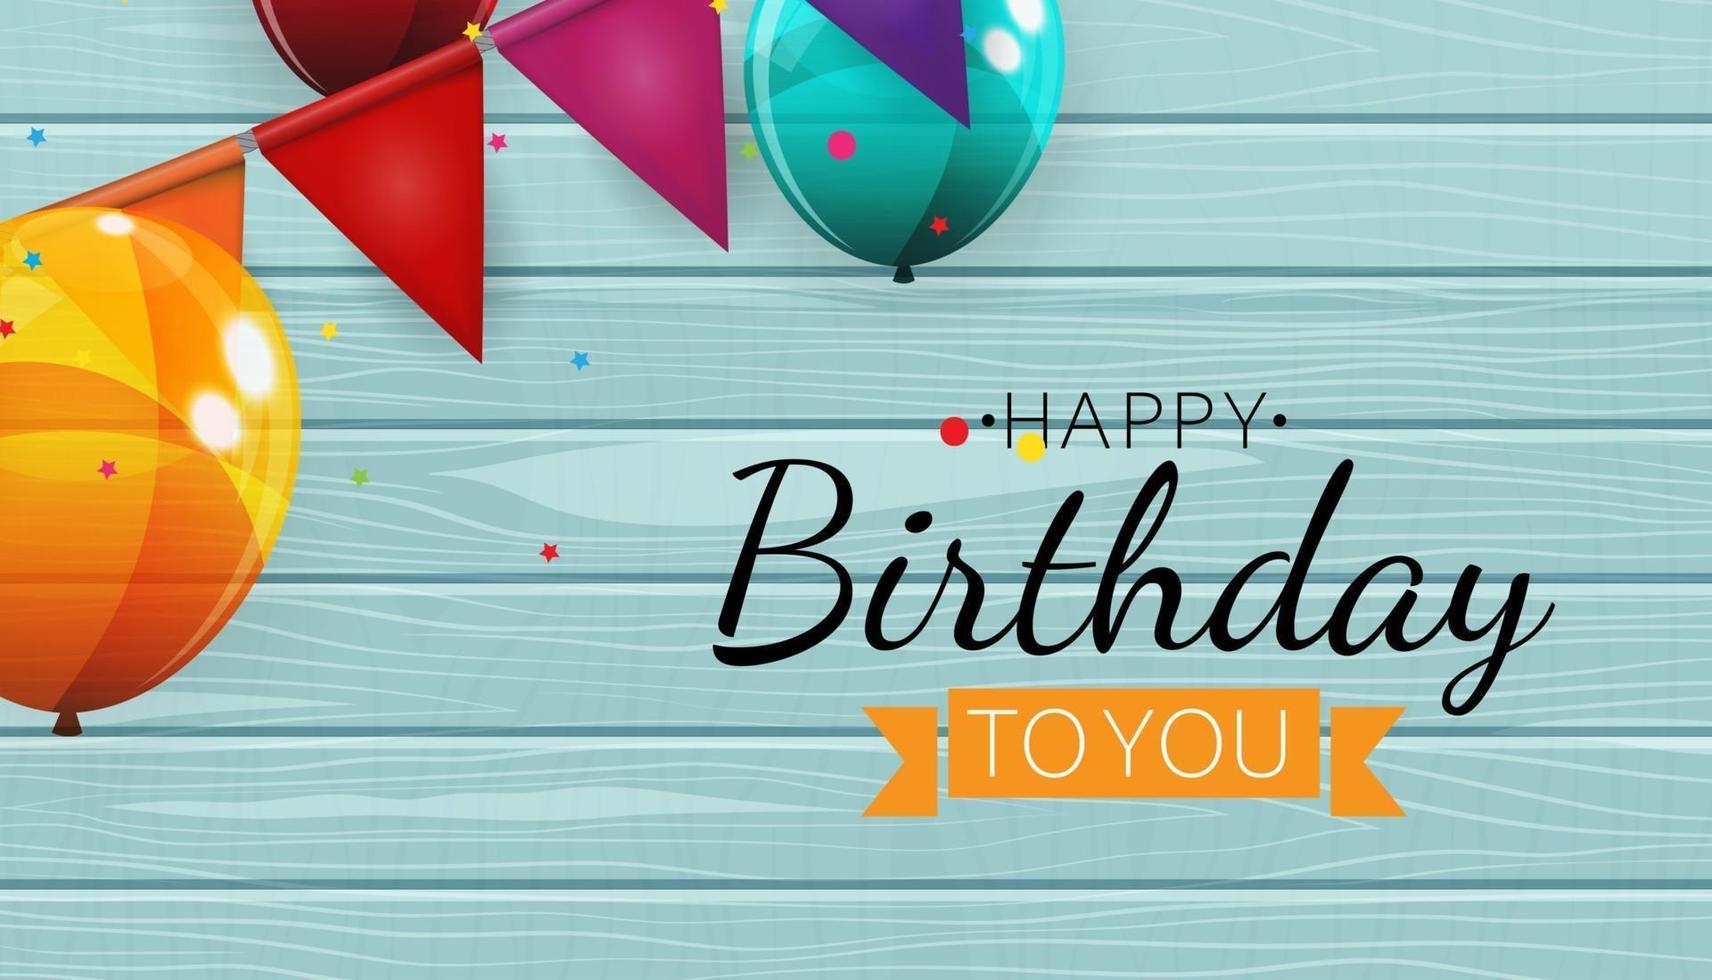 Color brillante feliz cumpleaños globos banner fondo ilustración vectorial vector